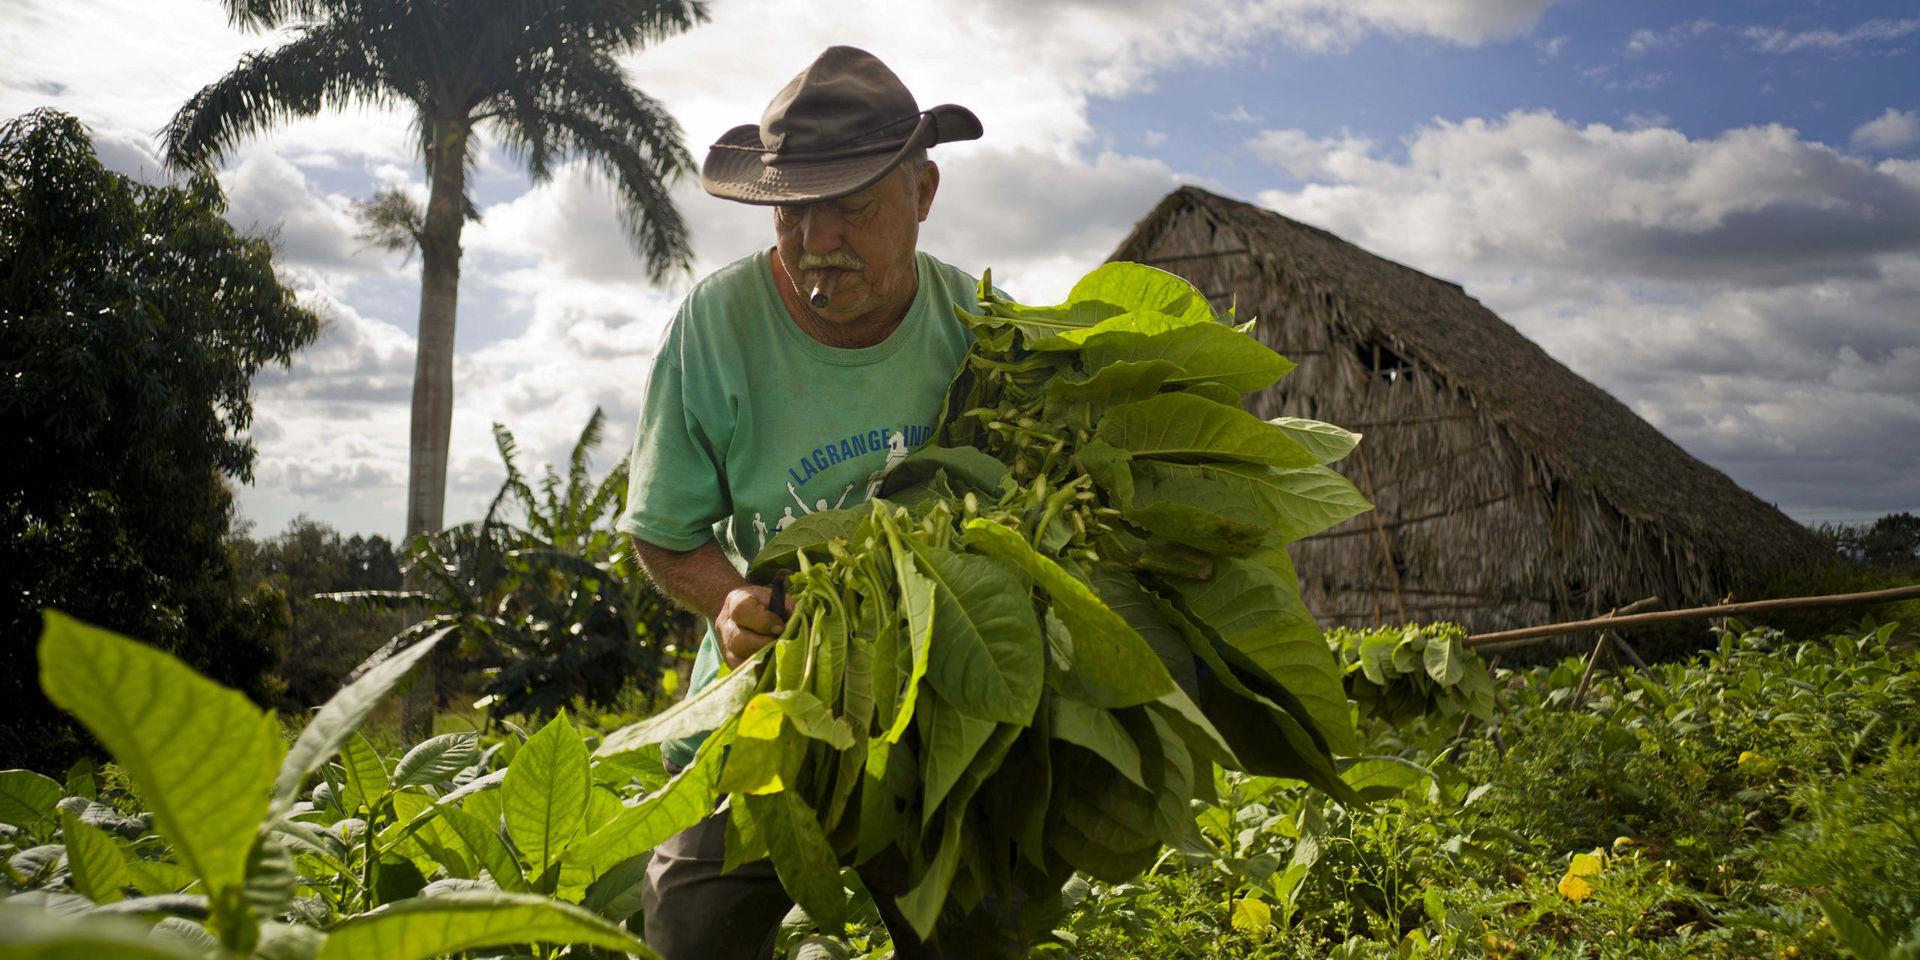 Raul Valdes Villasusa, 76, röker en cigarr och skördar tobaksblad på sin gård i Vinales i Pinar del Rio-provinsen på Kuba.